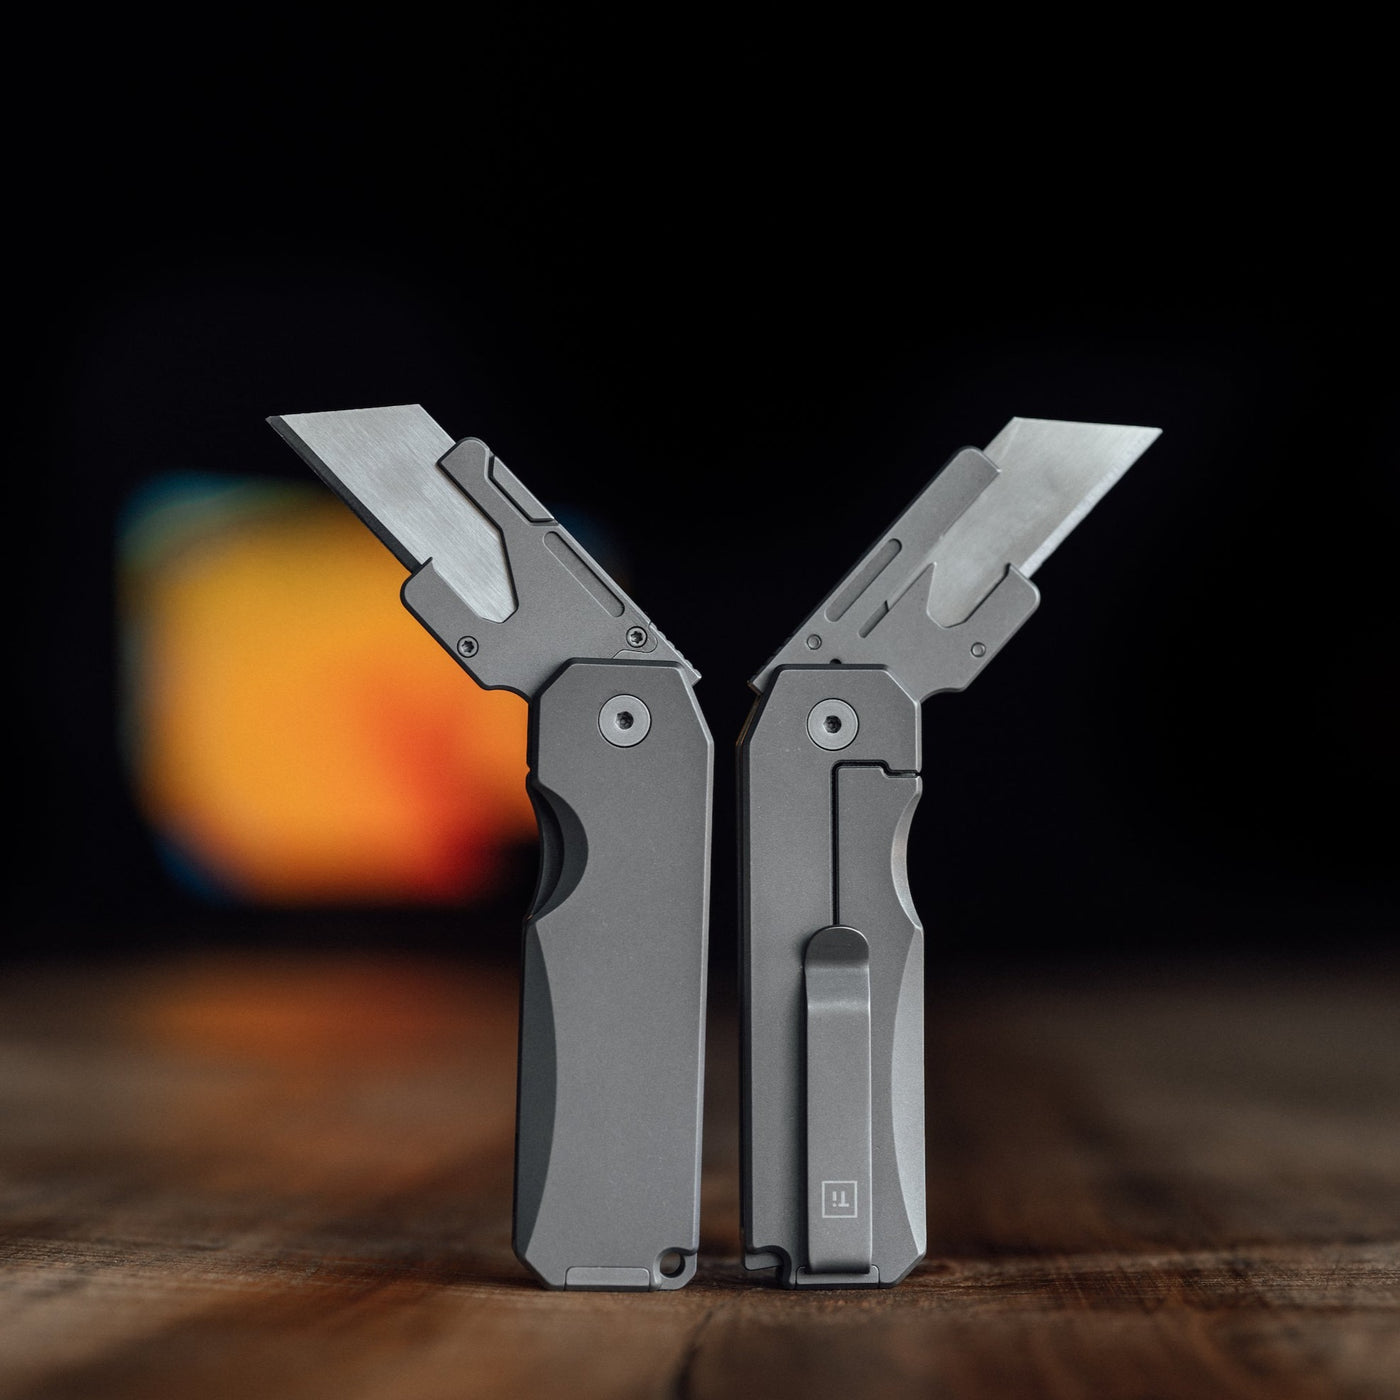 Big Idea Design Ti Utility Knife at MechanicSurplus.com